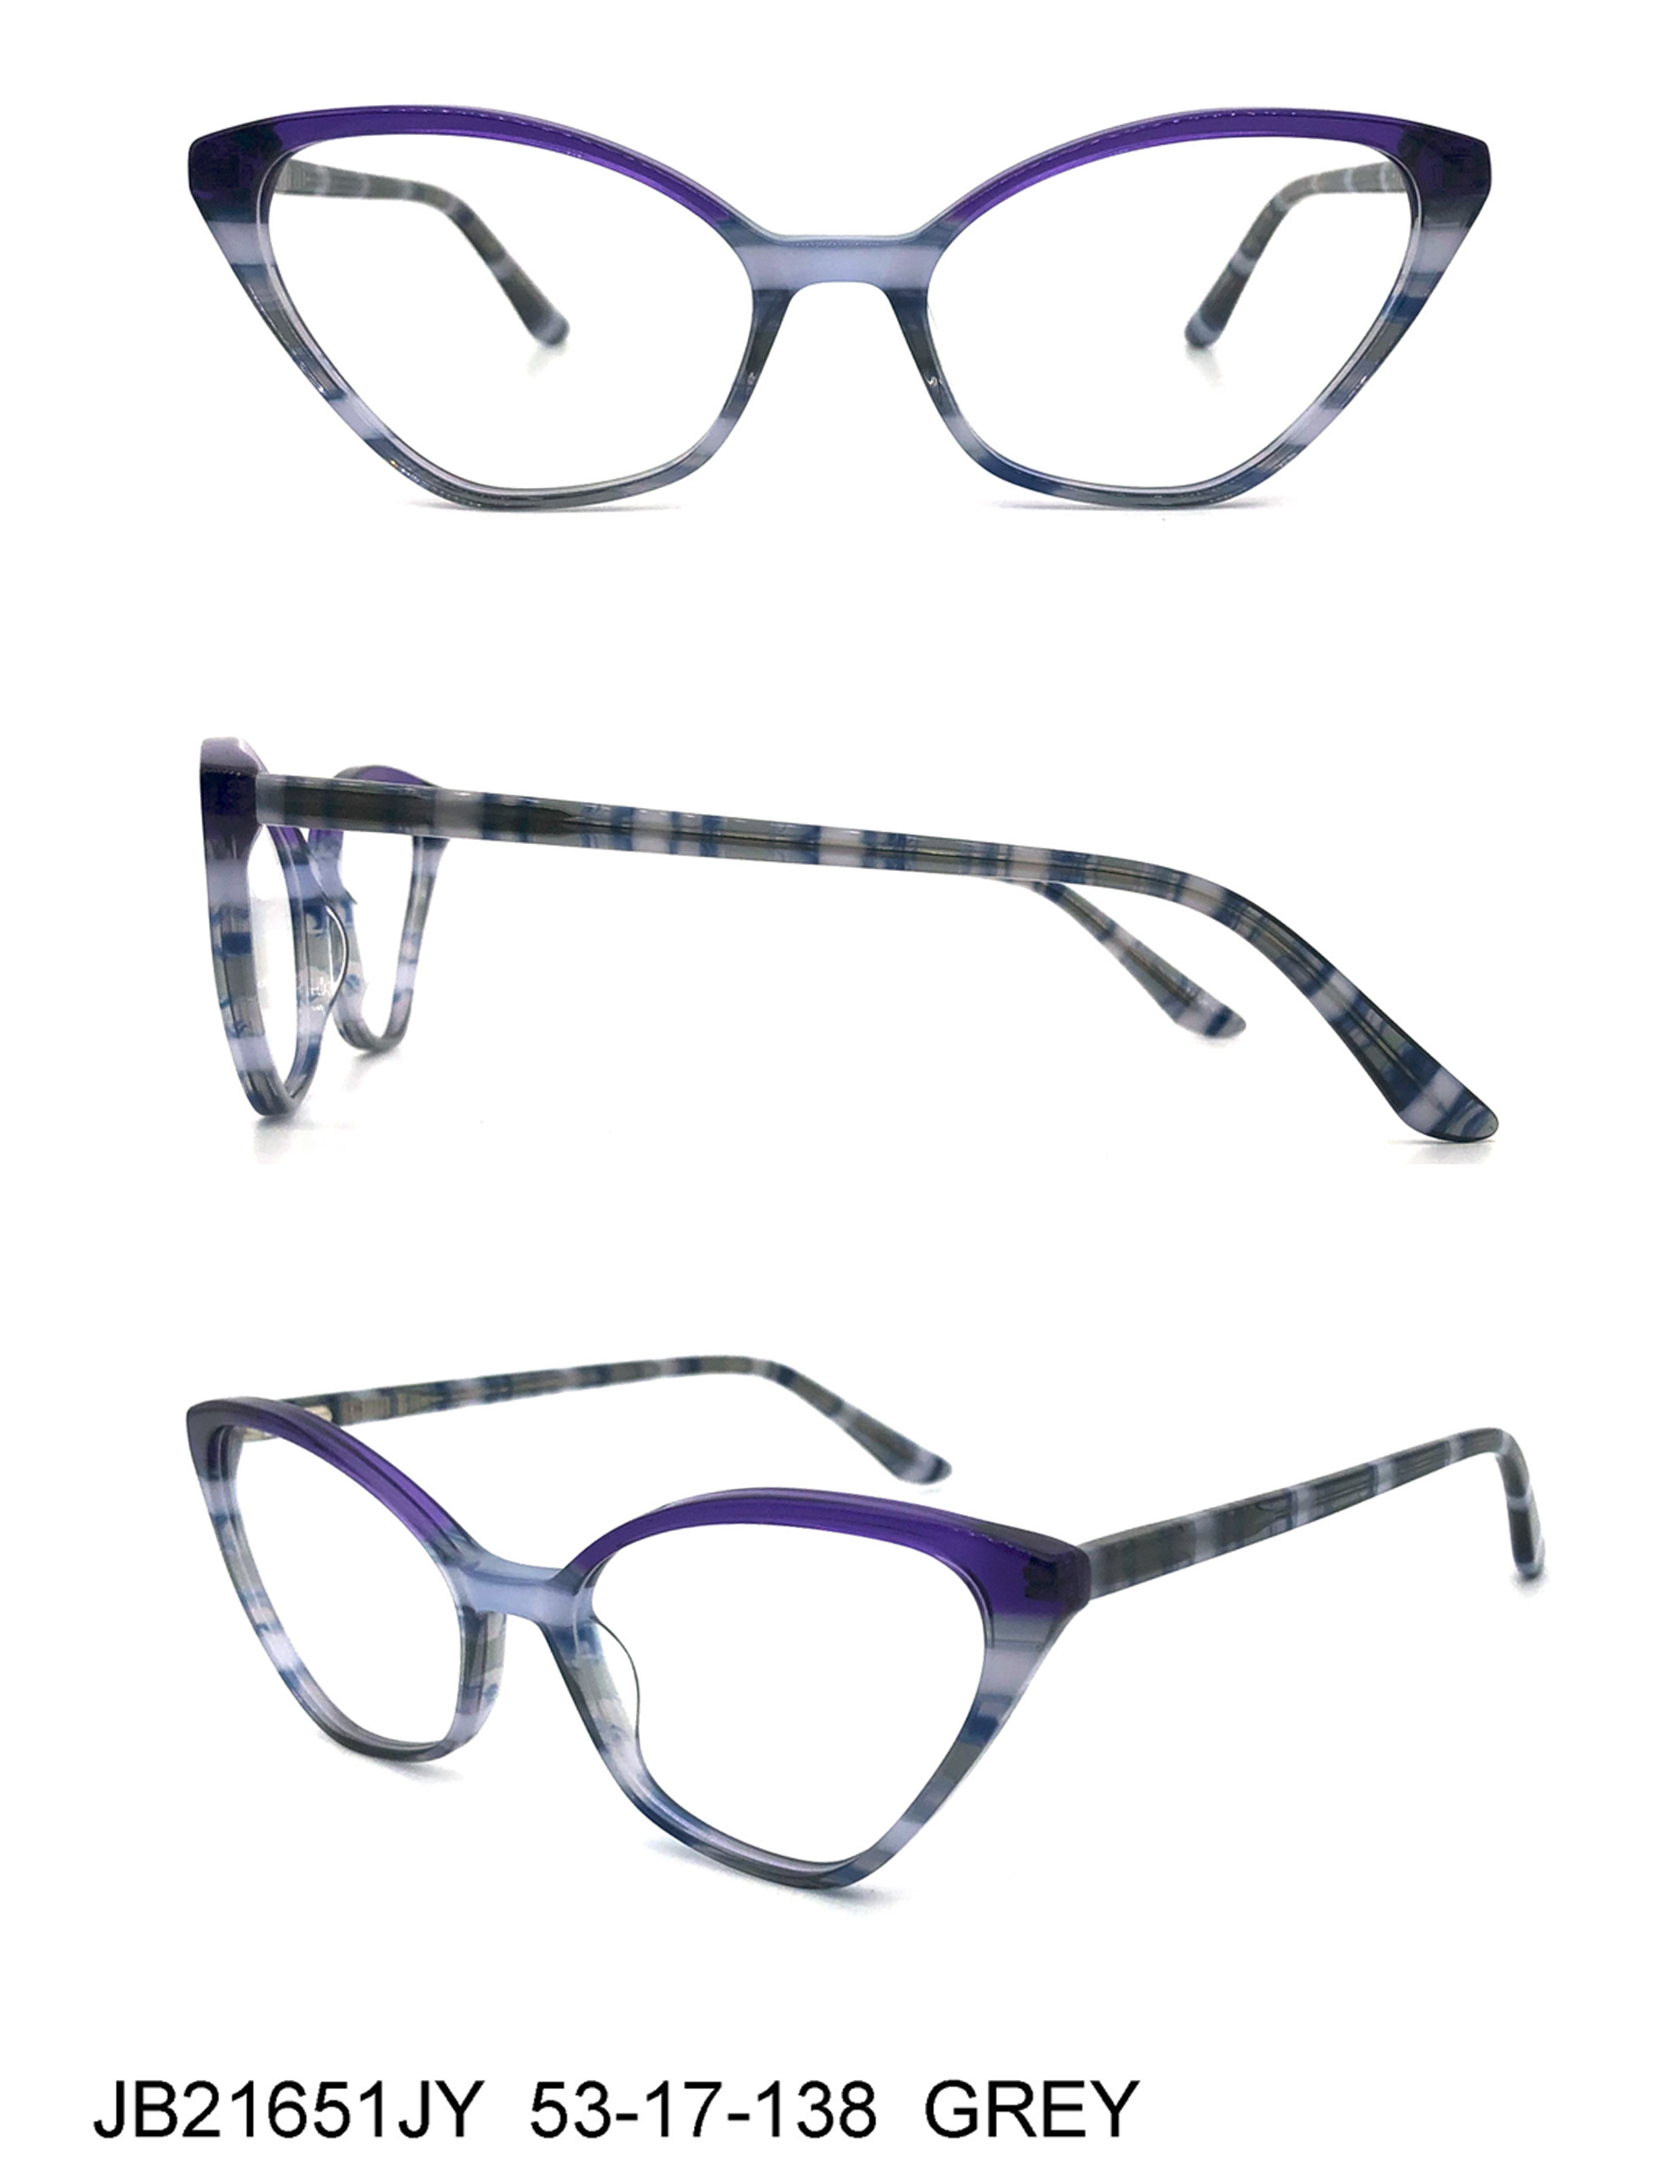 Female new design cat eye acetate eyeglasses